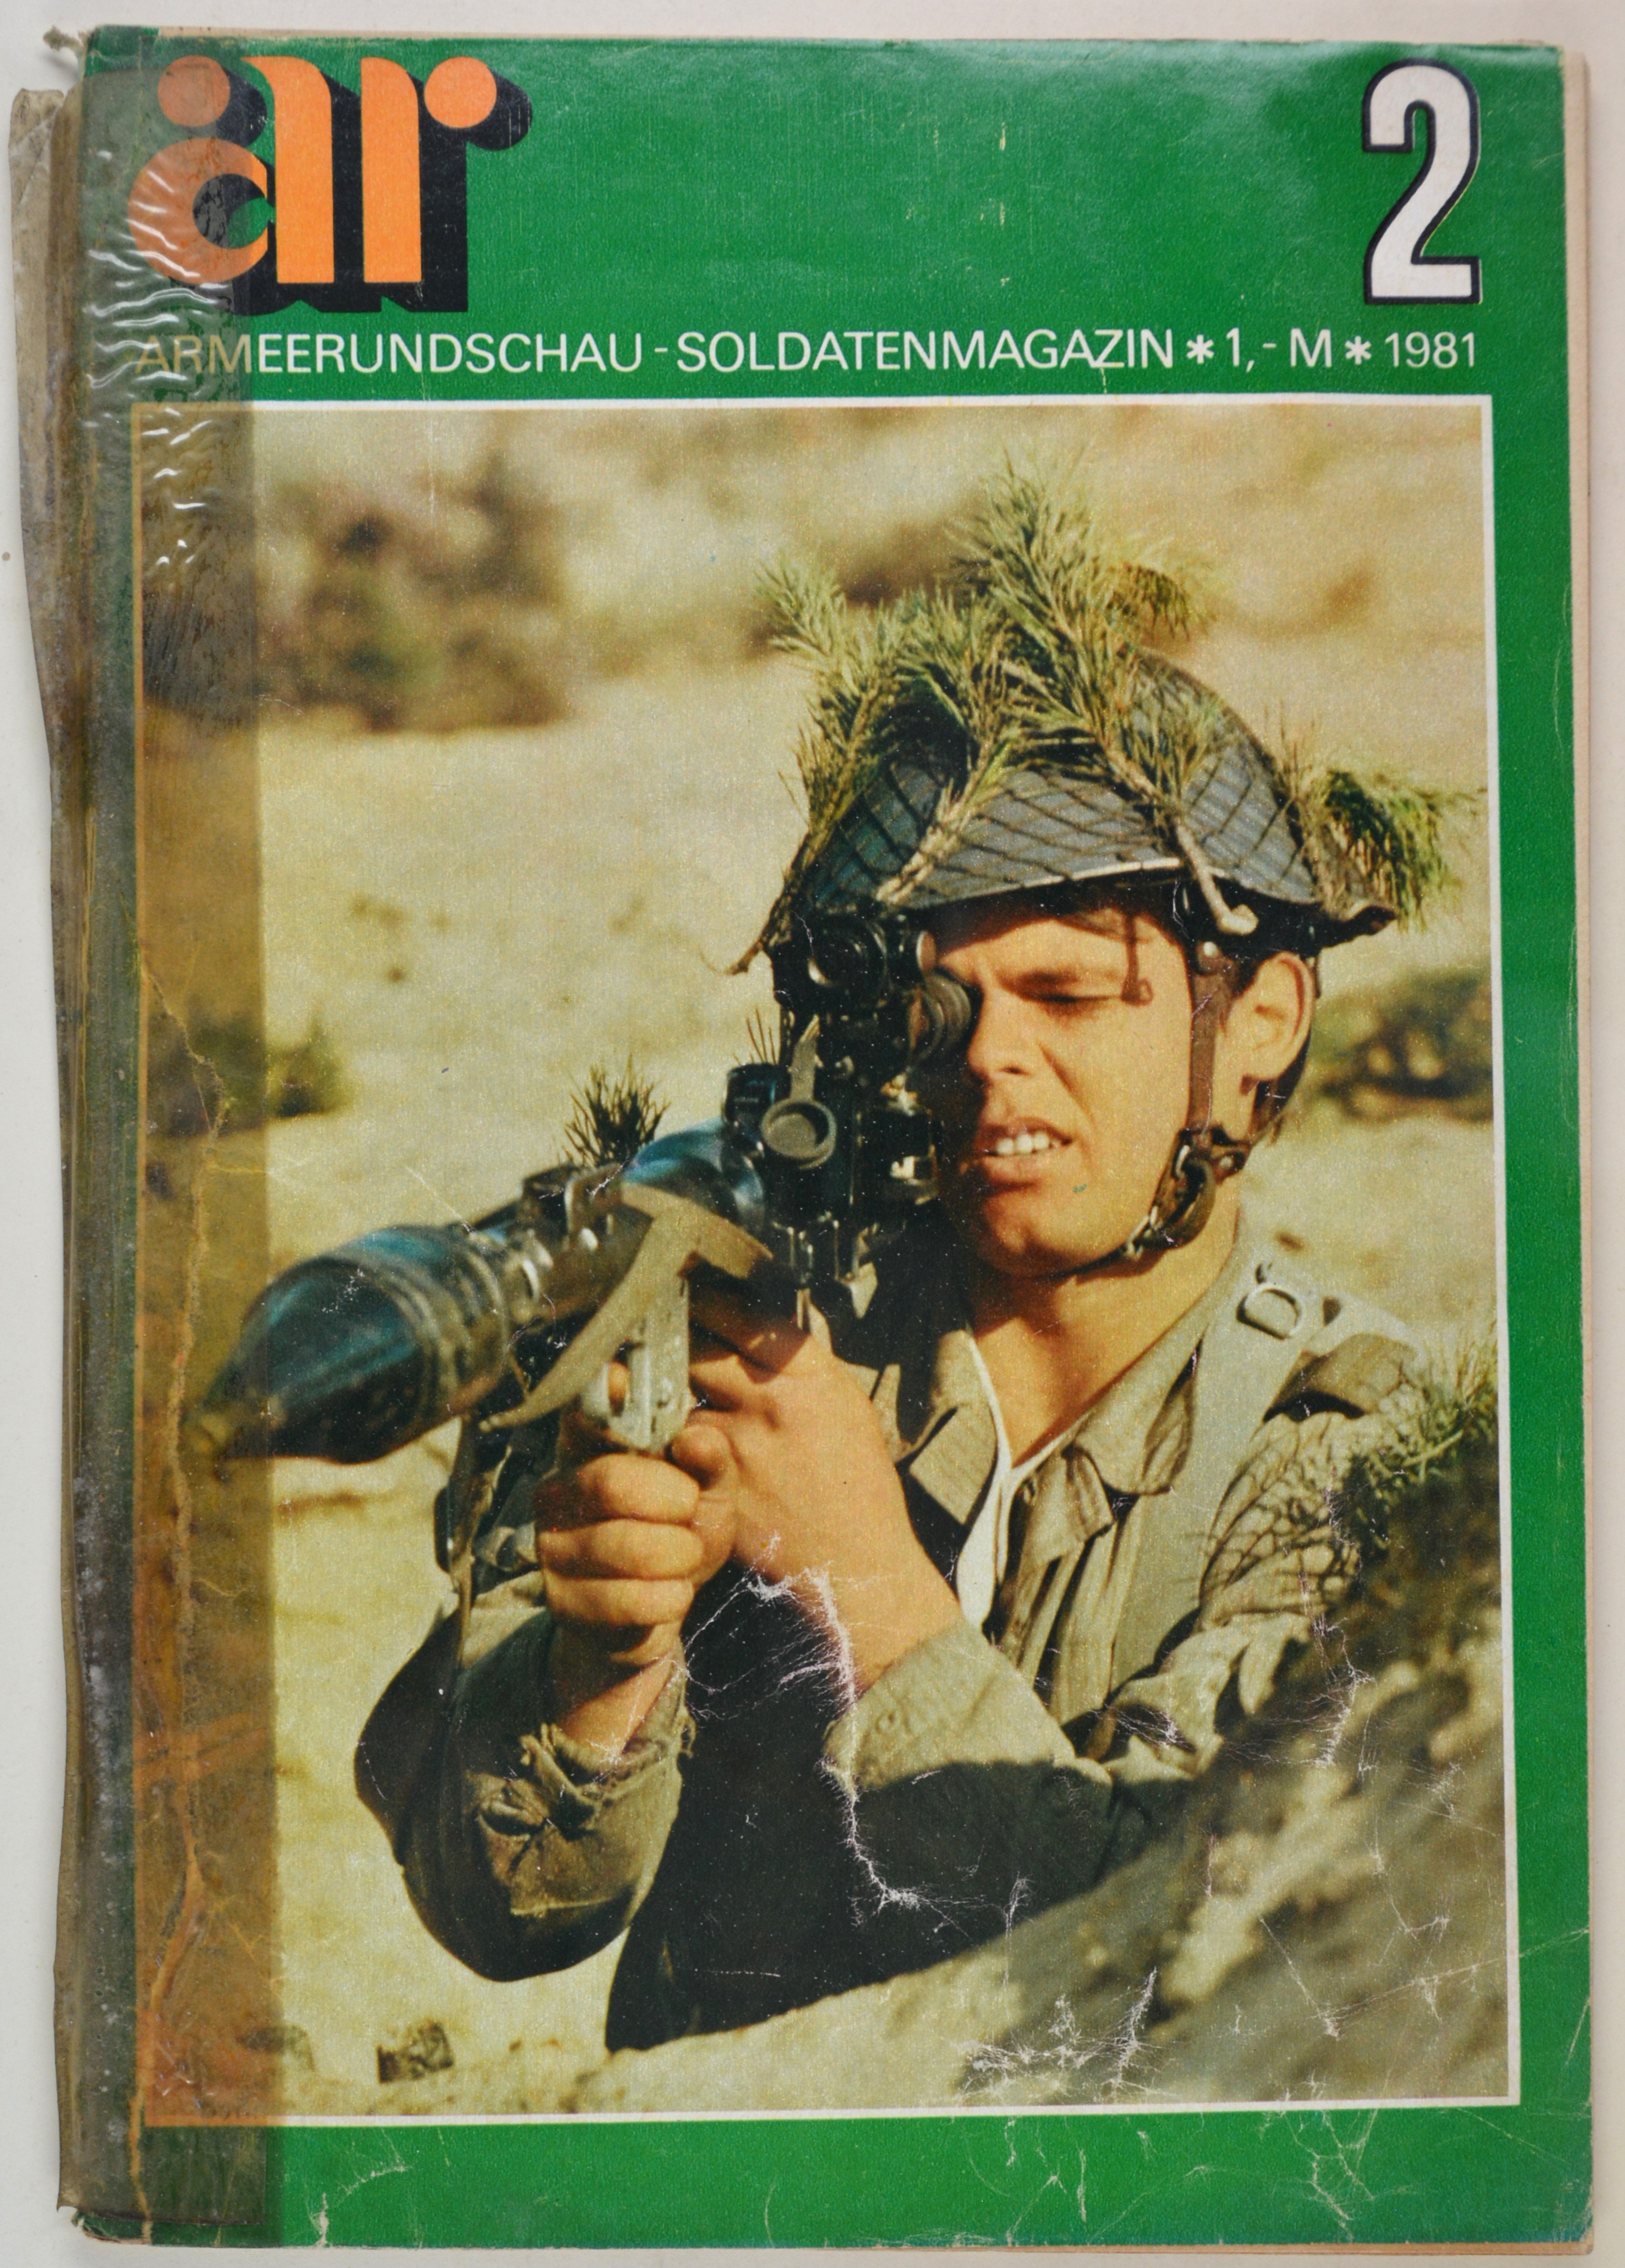 Armeerundschau - Soldatenmagazin (1981), Heft 2 (DDR Geschichtsmuseum im Dokumentationszentrum Perleberg CC BY-SA)